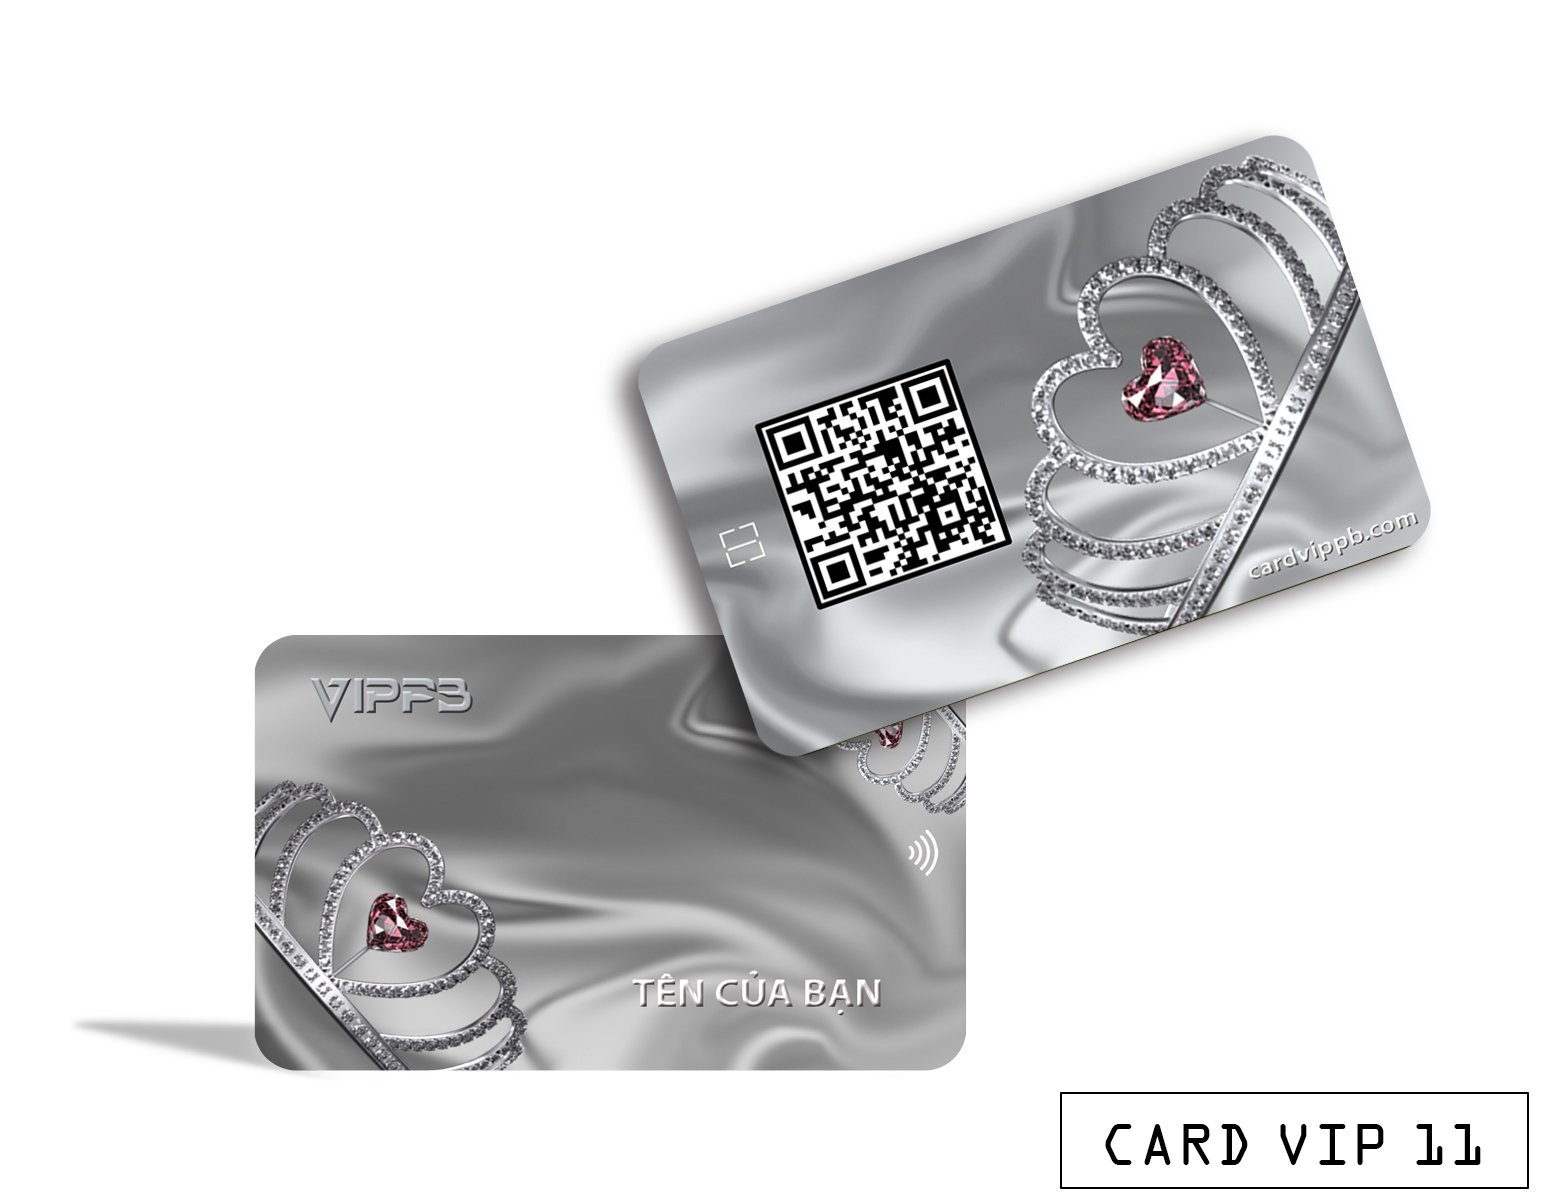 CARD VIPPB